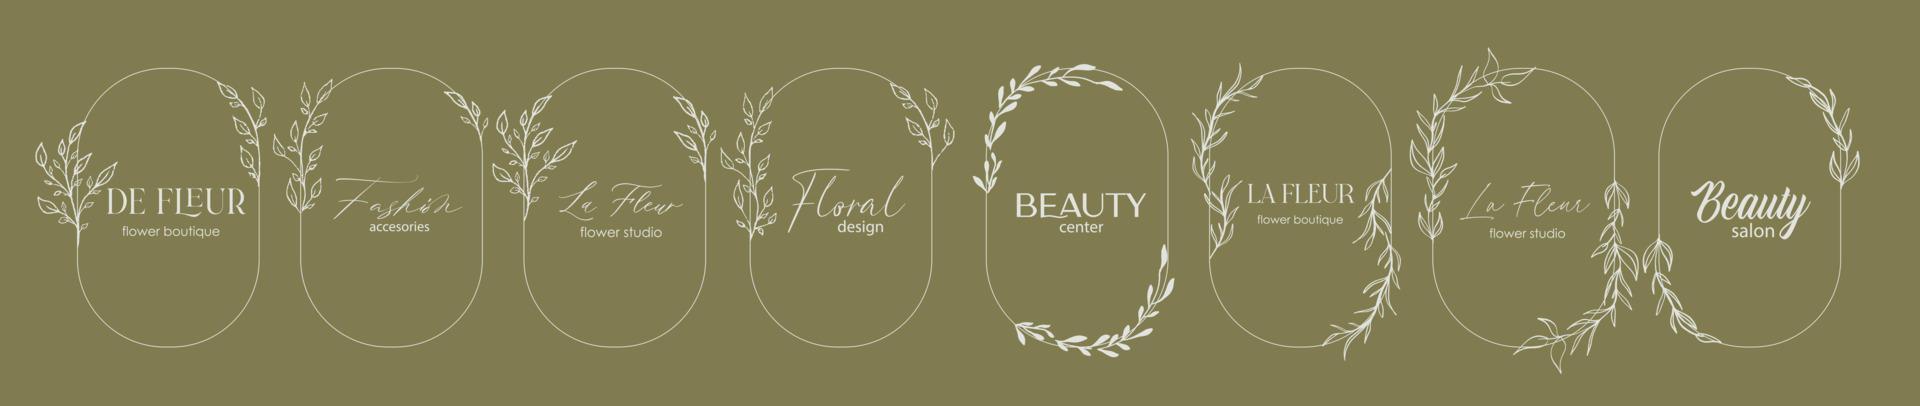 logo ontwerpsjabloon en monogram concept in trendy lineaire stijl met boog - bloemenframe met kopie ruimte voor tekst of brief - embleem voor mode, beauty en sieraden, huwelijksuitnodiging, socia. vector